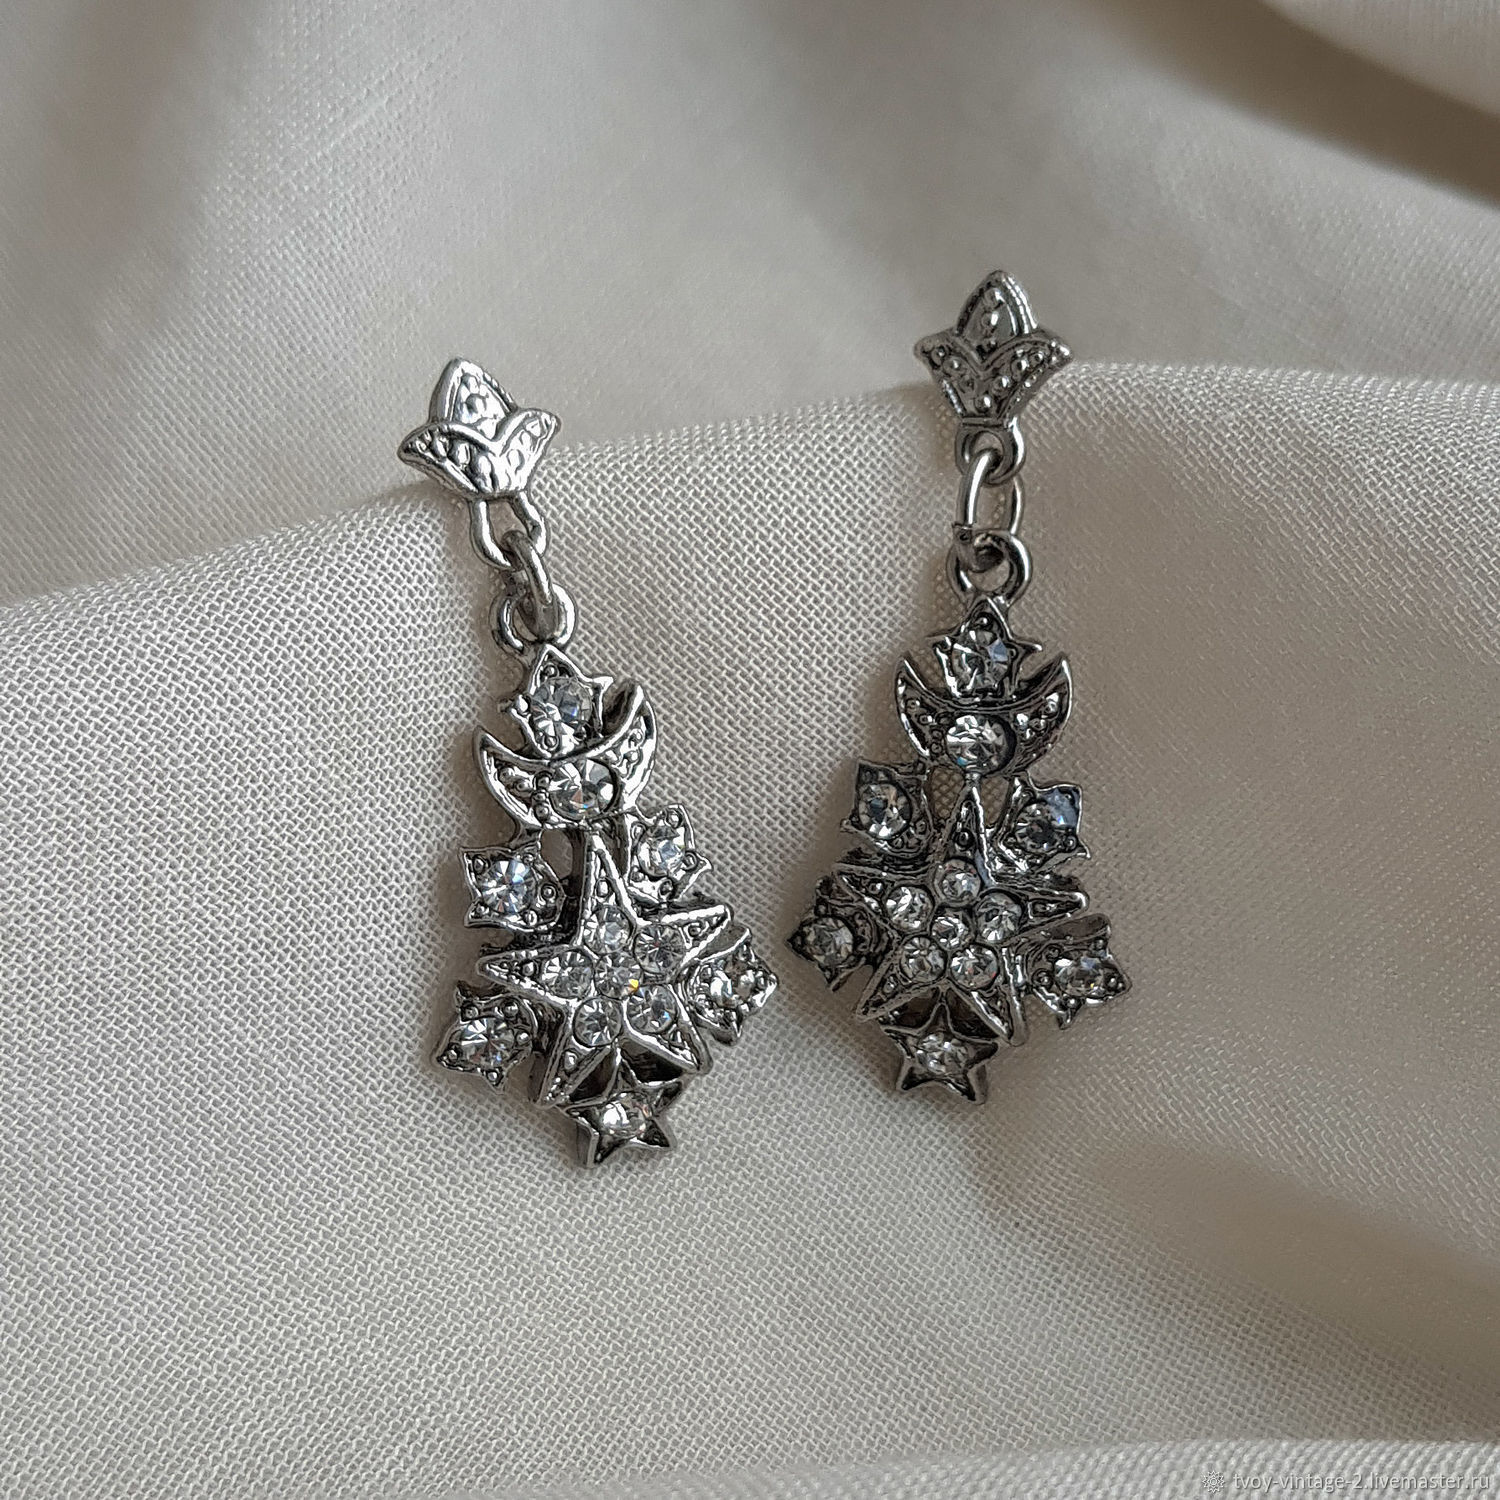 Vintage avon snowflake earrings